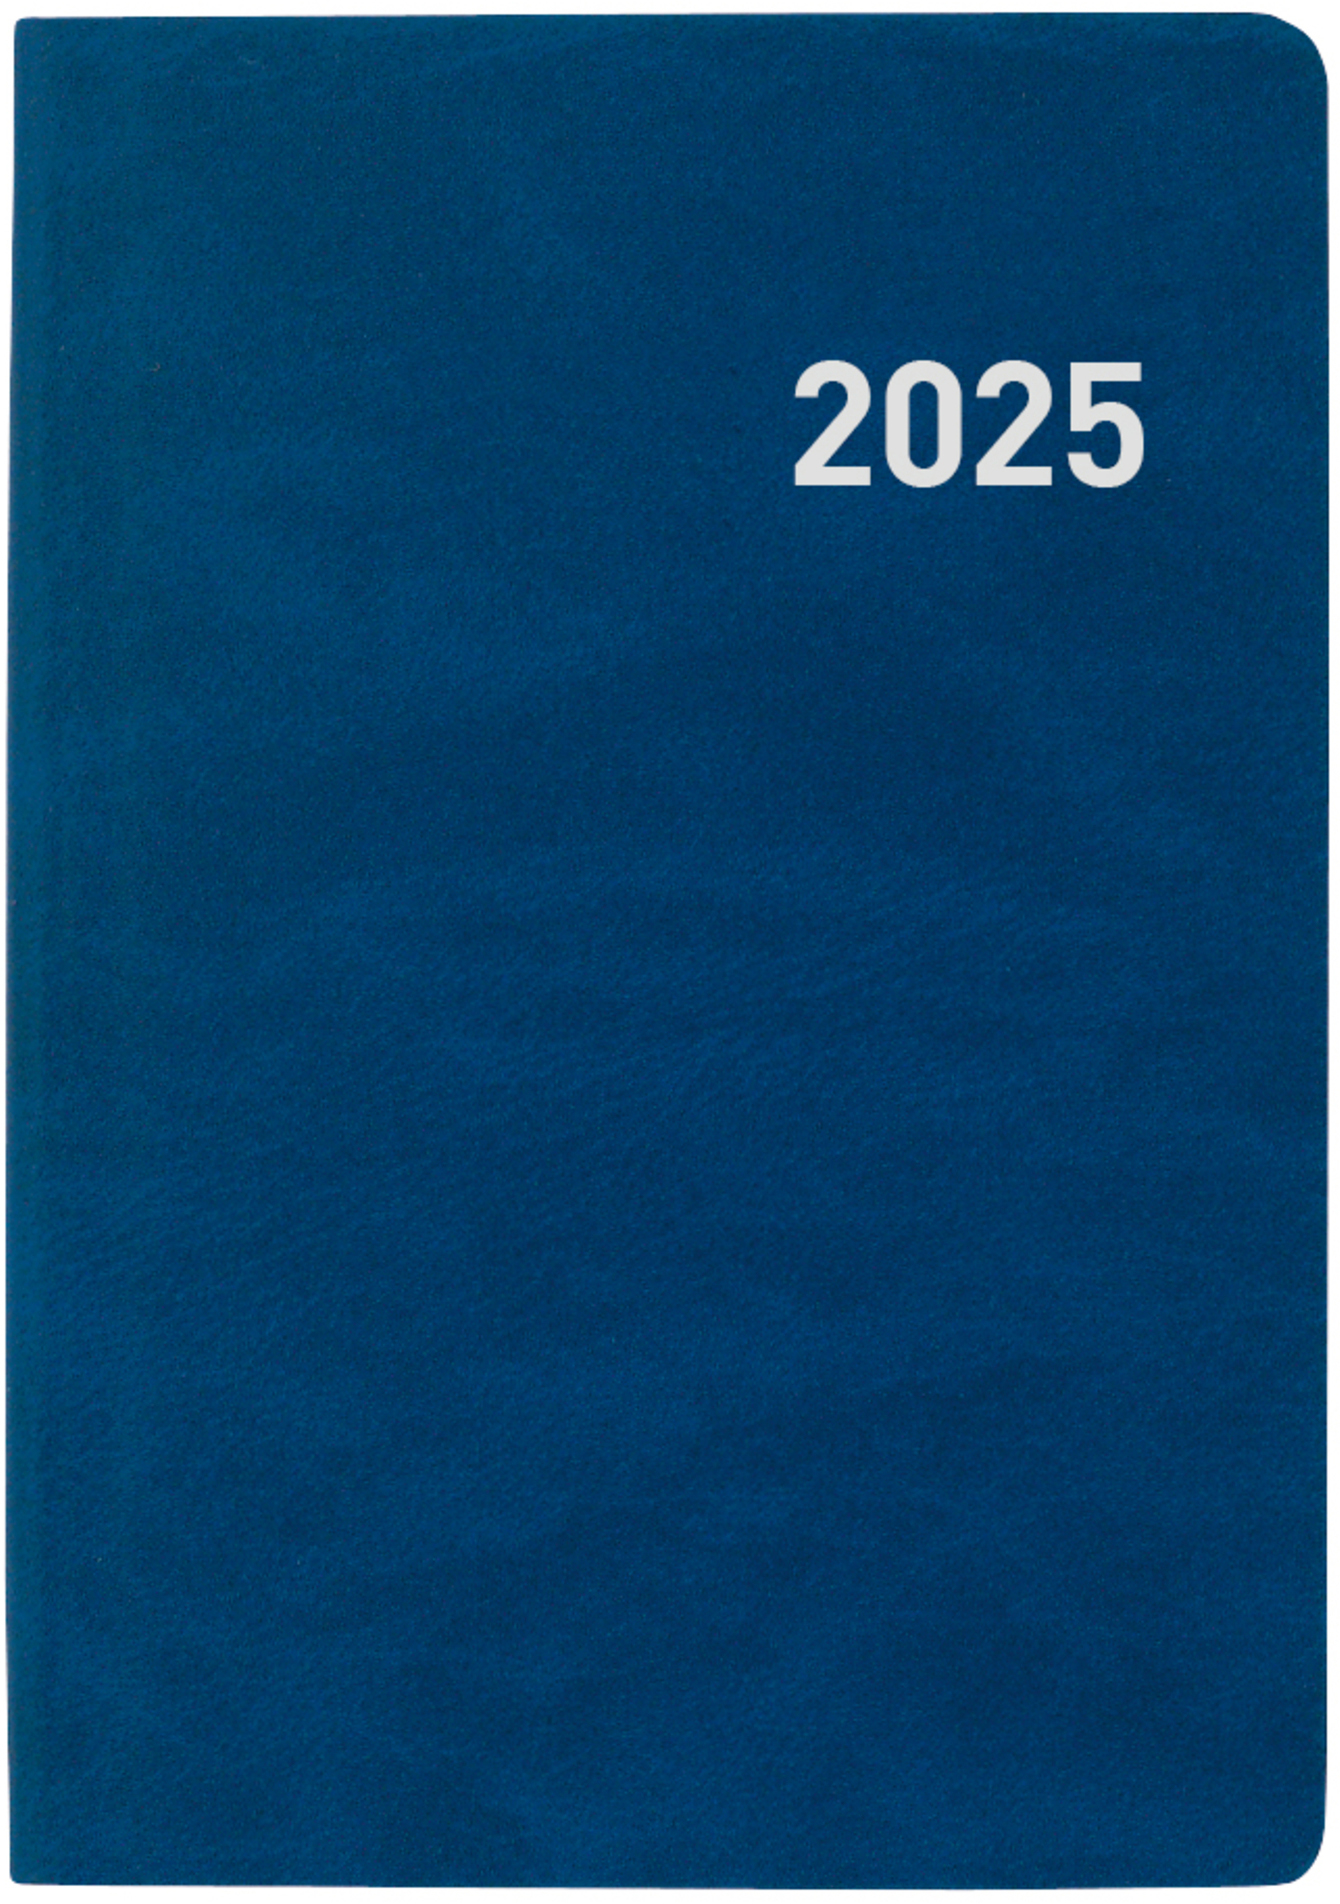 BIELLA Agenda Mittelformat 2025 822301050025 1S/2P bleu ML 7.6x11cm